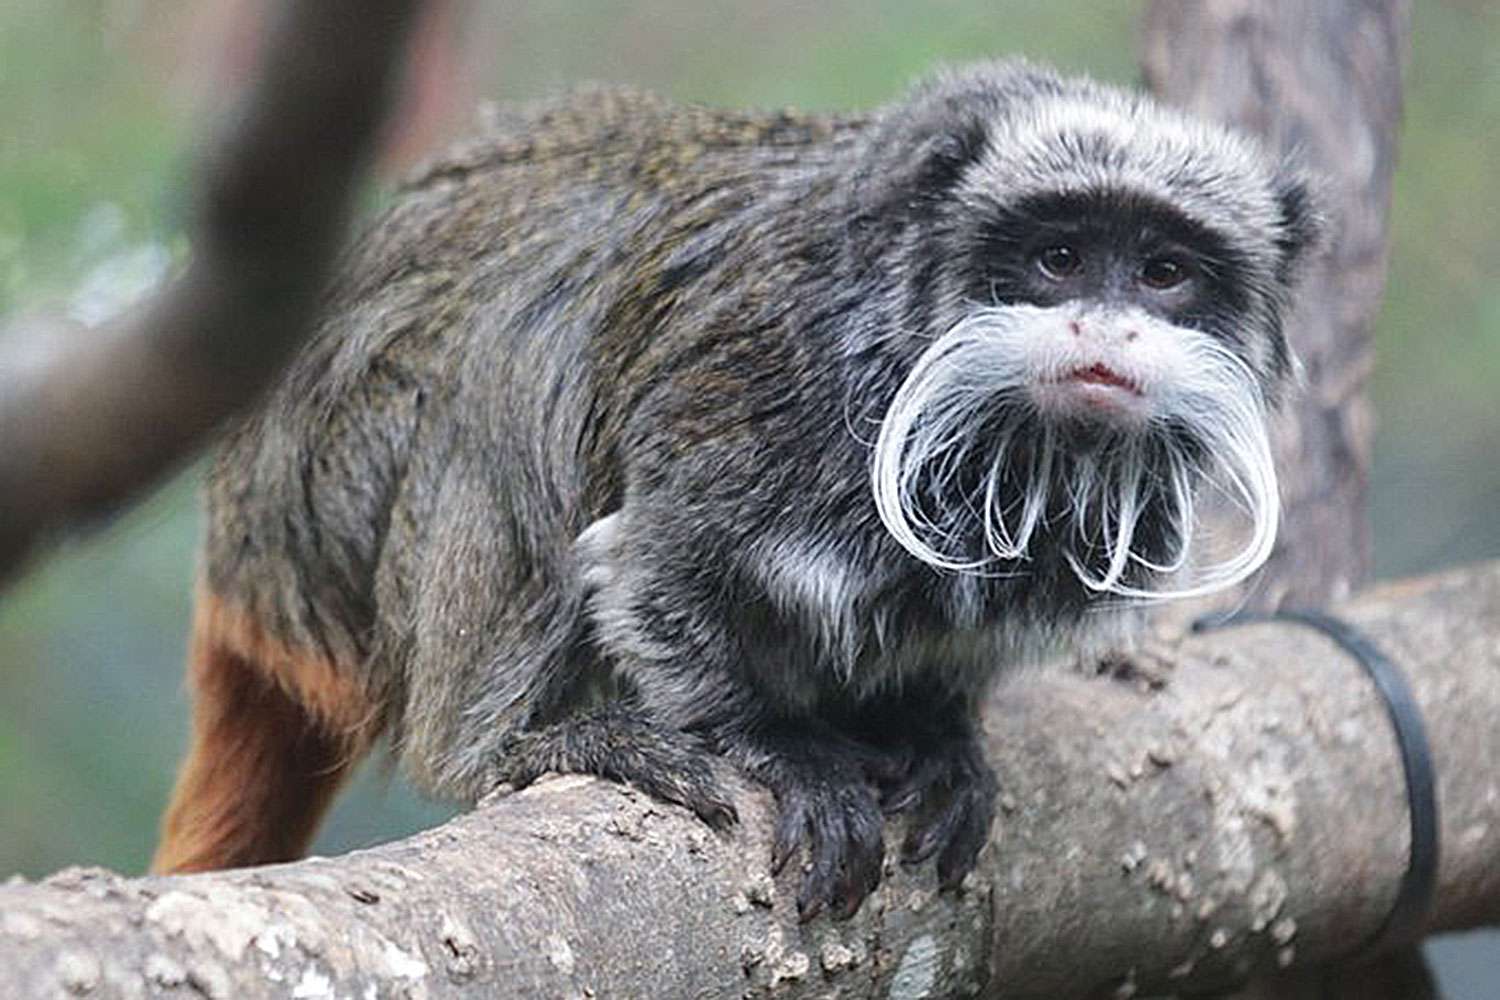 สวนสัตว์ดัลลัสรายงานการหายตัวไปของลิงทามาริน 2 ตัว หลังสัตว์หลายตัวหายไป